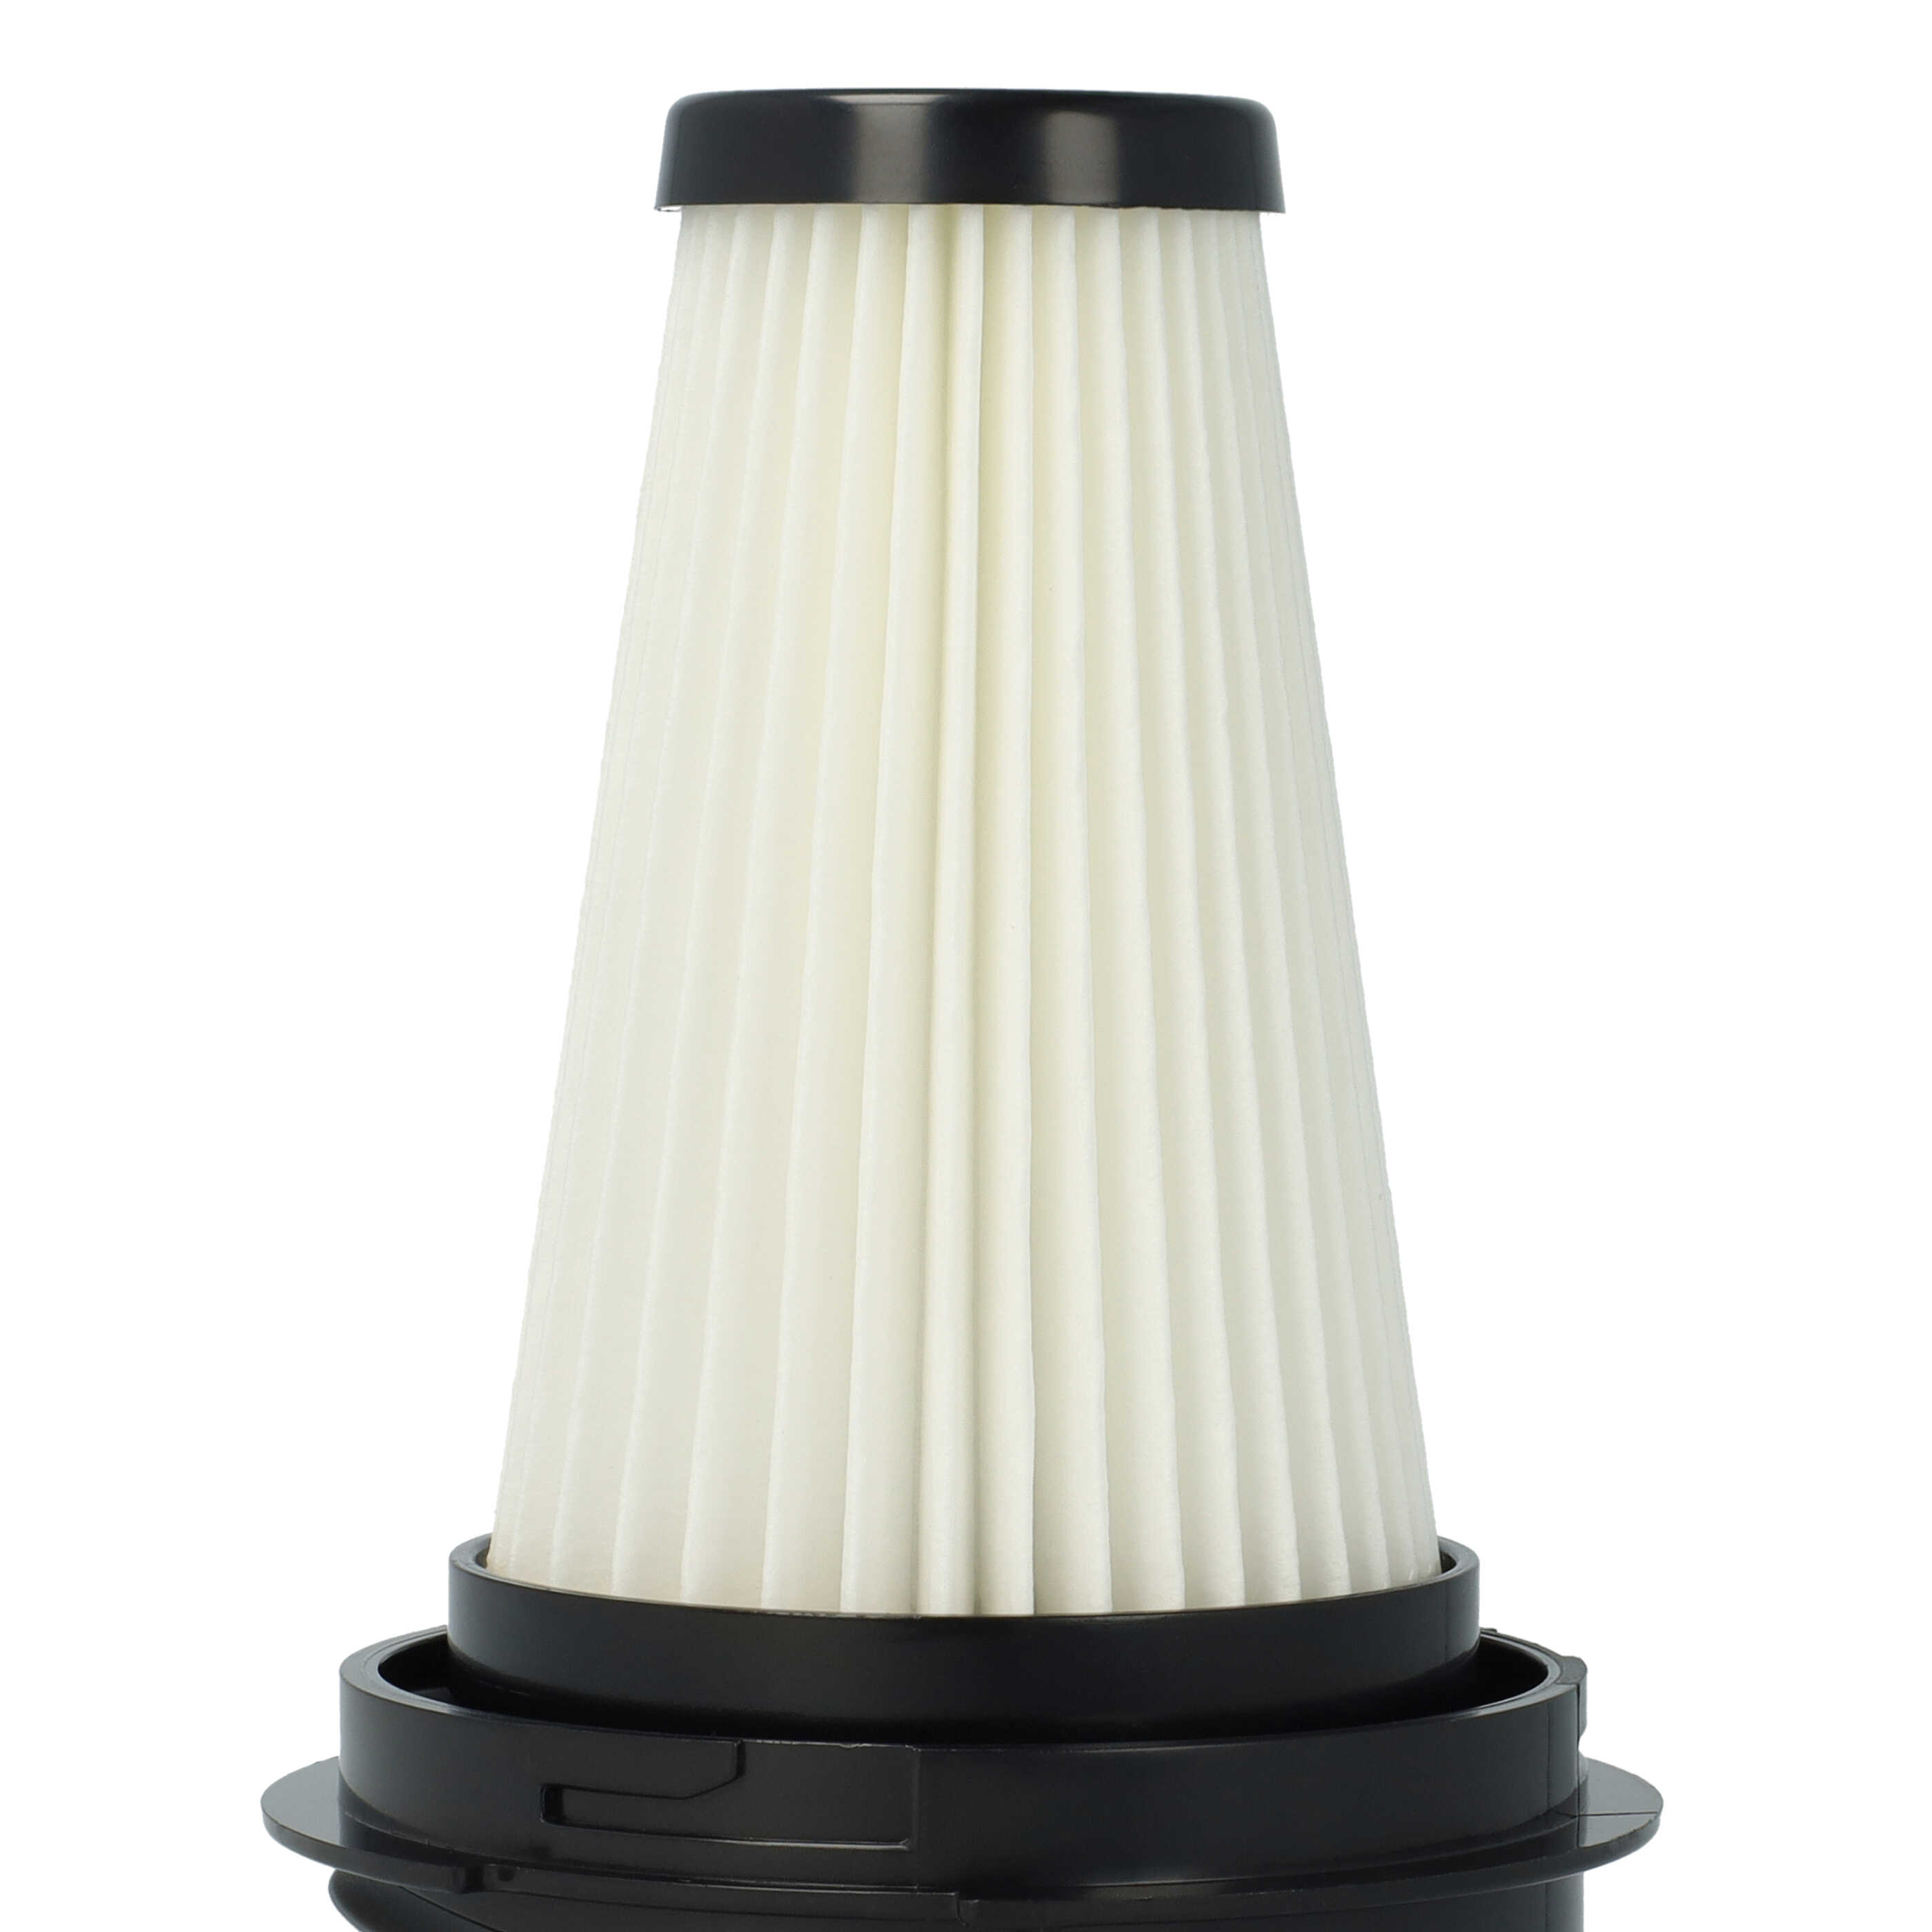 Filtro reemplaza Black & Decker SVF11, 1004708-73 para aspiradora - filtro plisado negro / blanco / gris